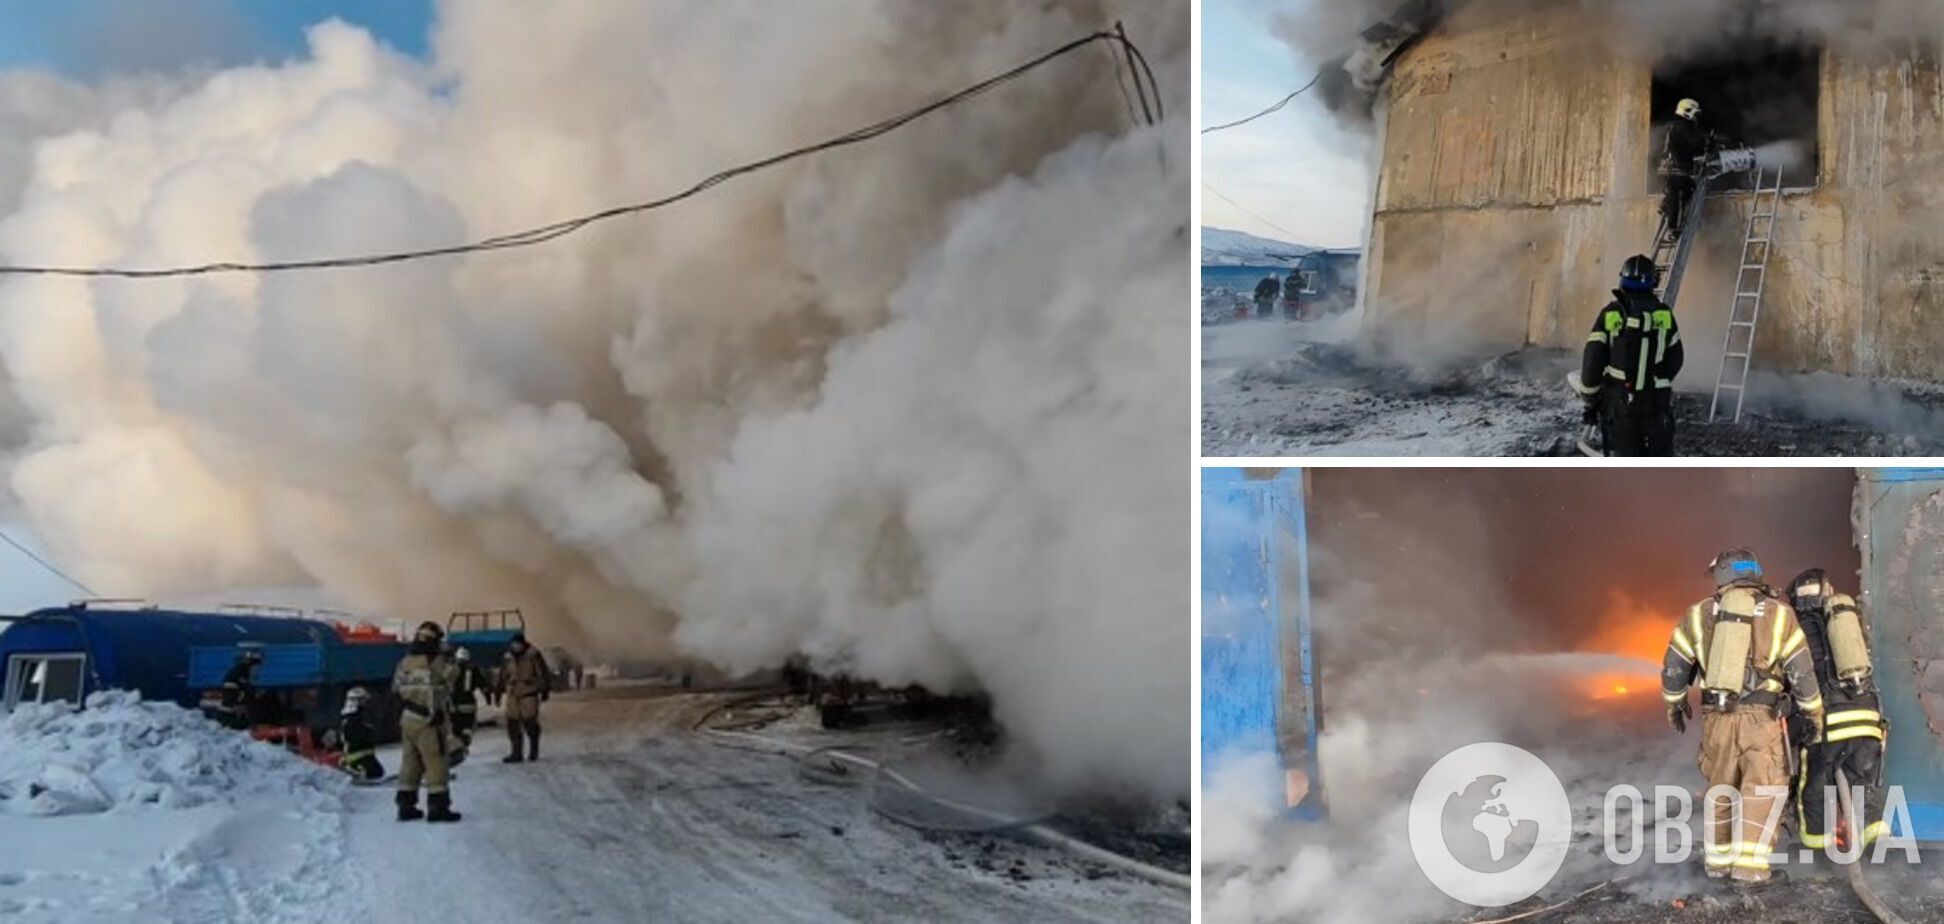 В российском Магадане произошел мощный пожар: сгорел склад с грузовой техникой. Фото и видео